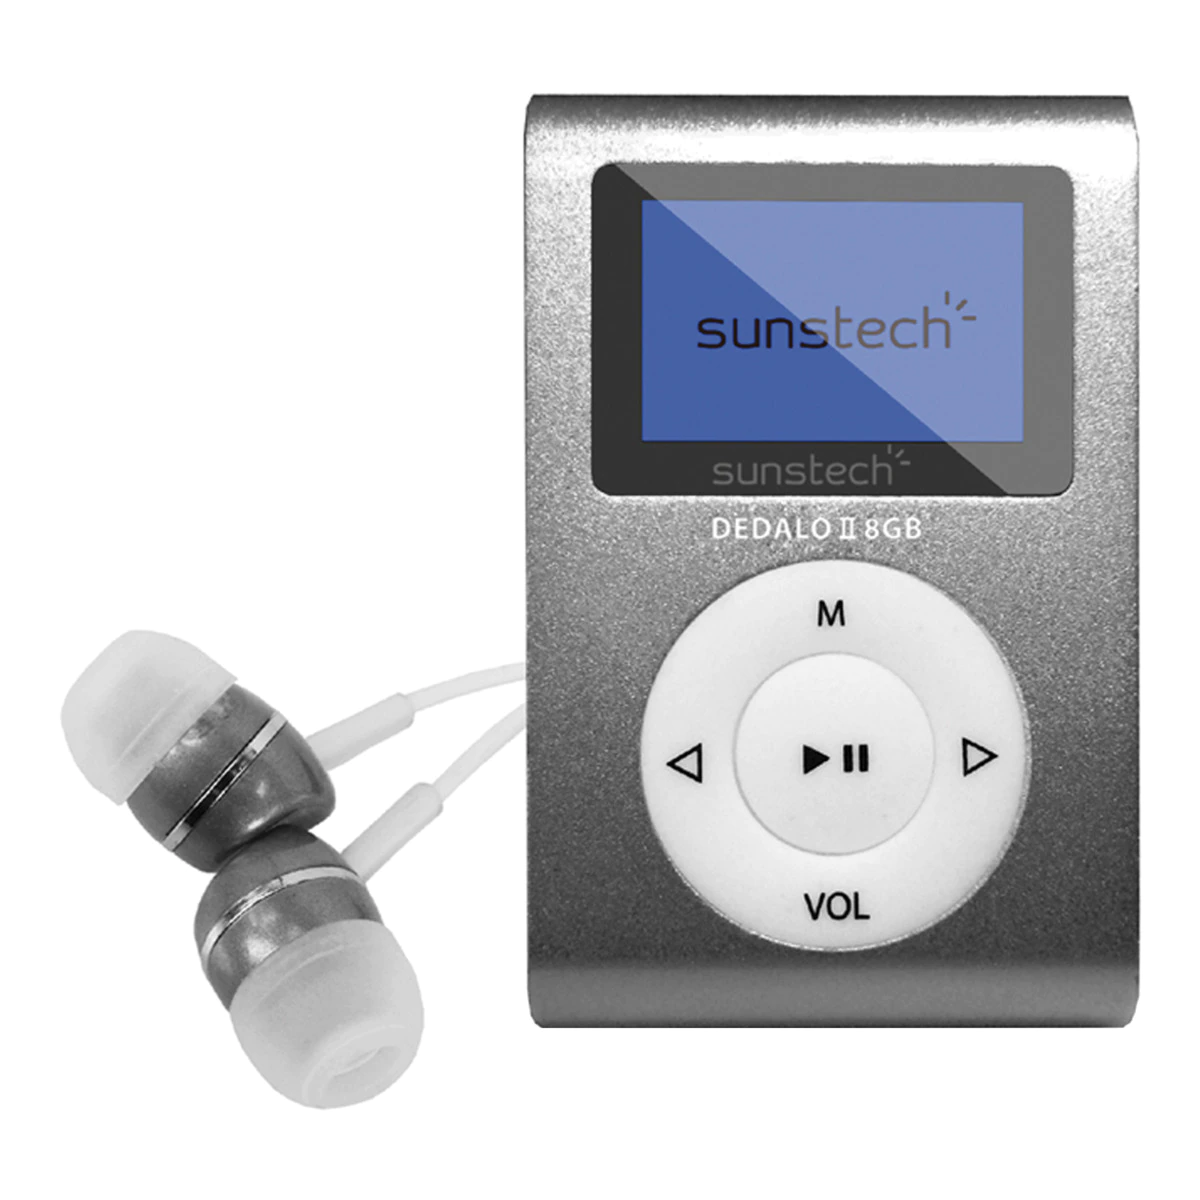 Reproductor MP3 Sunstech Dedalo III Gris de 8 GB con radio FM